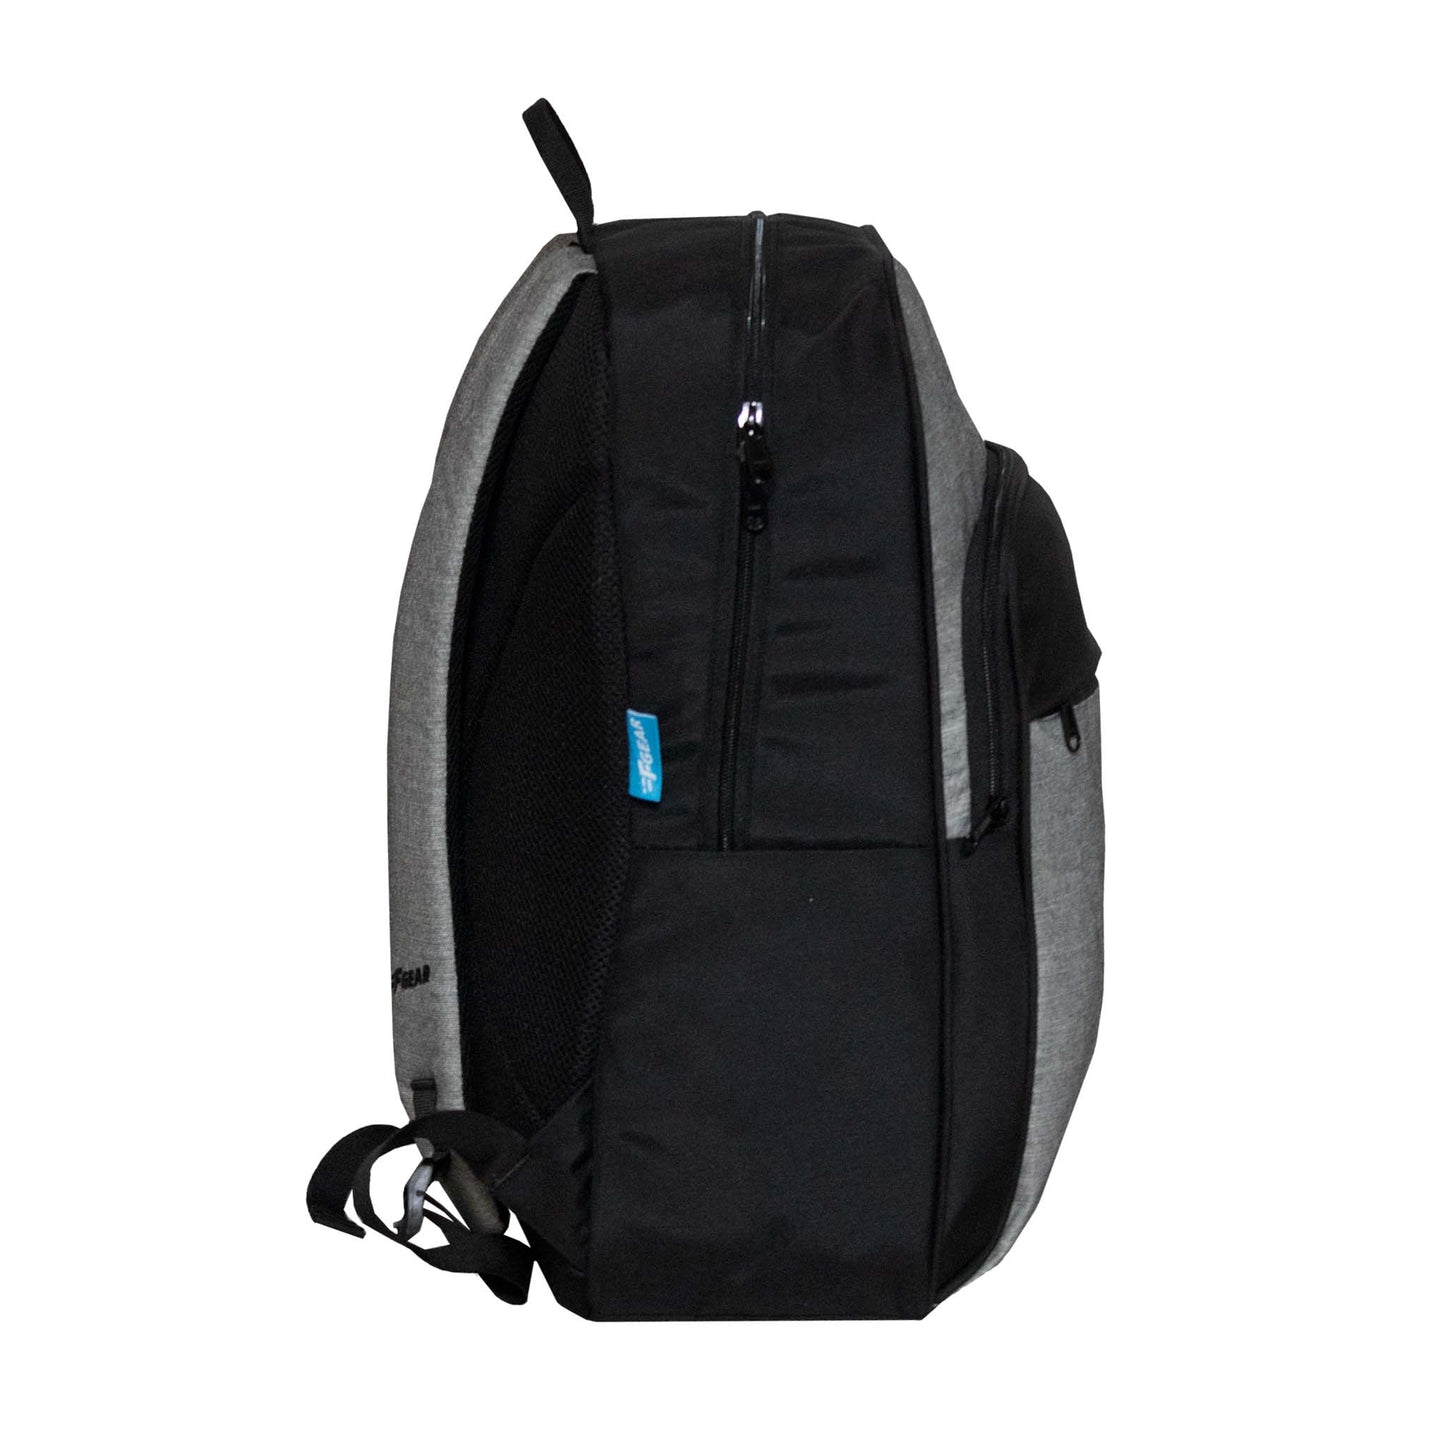 Apostille 17L Melange Grey Black Backpack